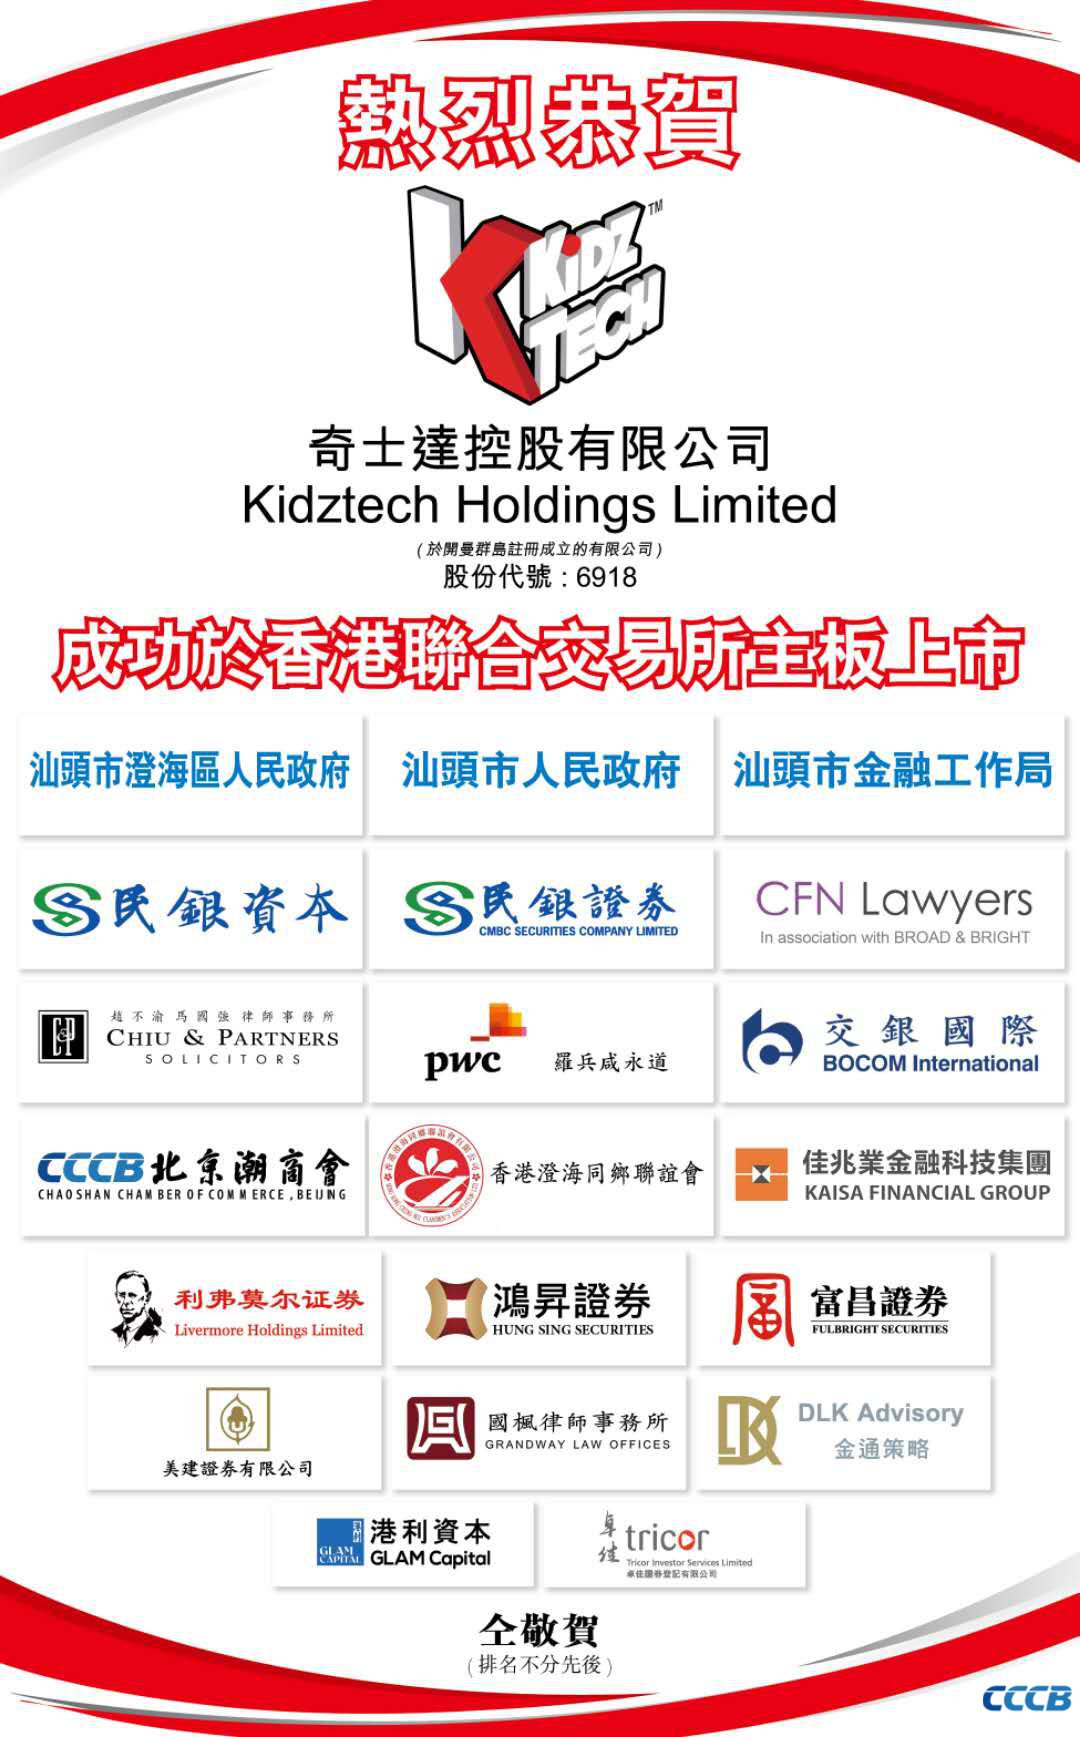 简讯 | 北京潮商会副会长单位奇士达控股有限公司在香港成功上市